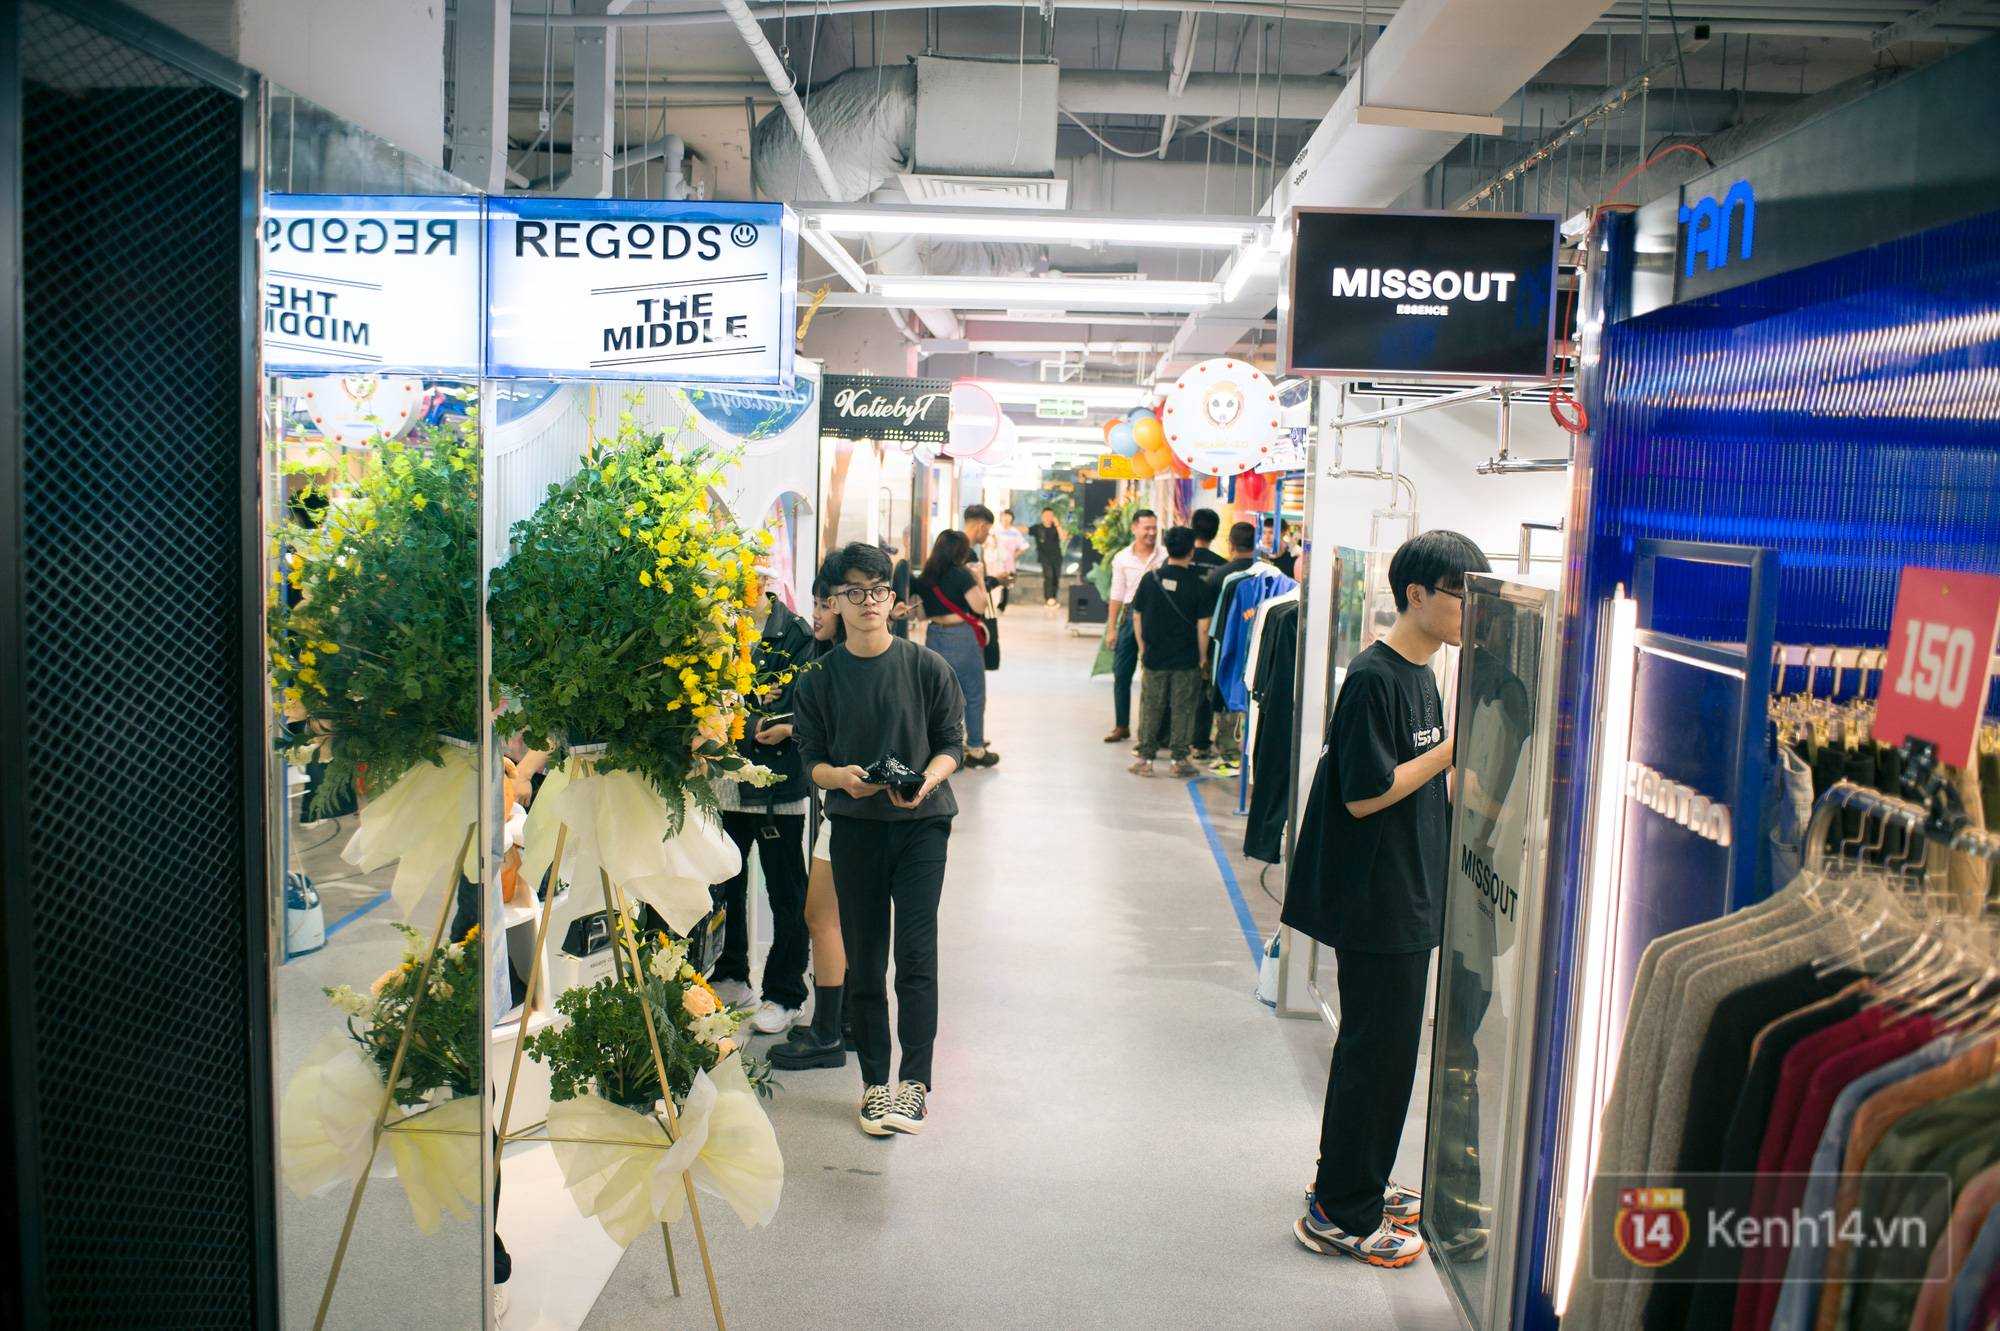 The New Playground khai trương khu mua sắm dưới lòng đất thứ 2 tại Sài Gòn, giới trẻ nhận xét: Mọi thứ đều “nhỉnh” hơn địa điểm cũ rất nhiều! - Ảnh 12.